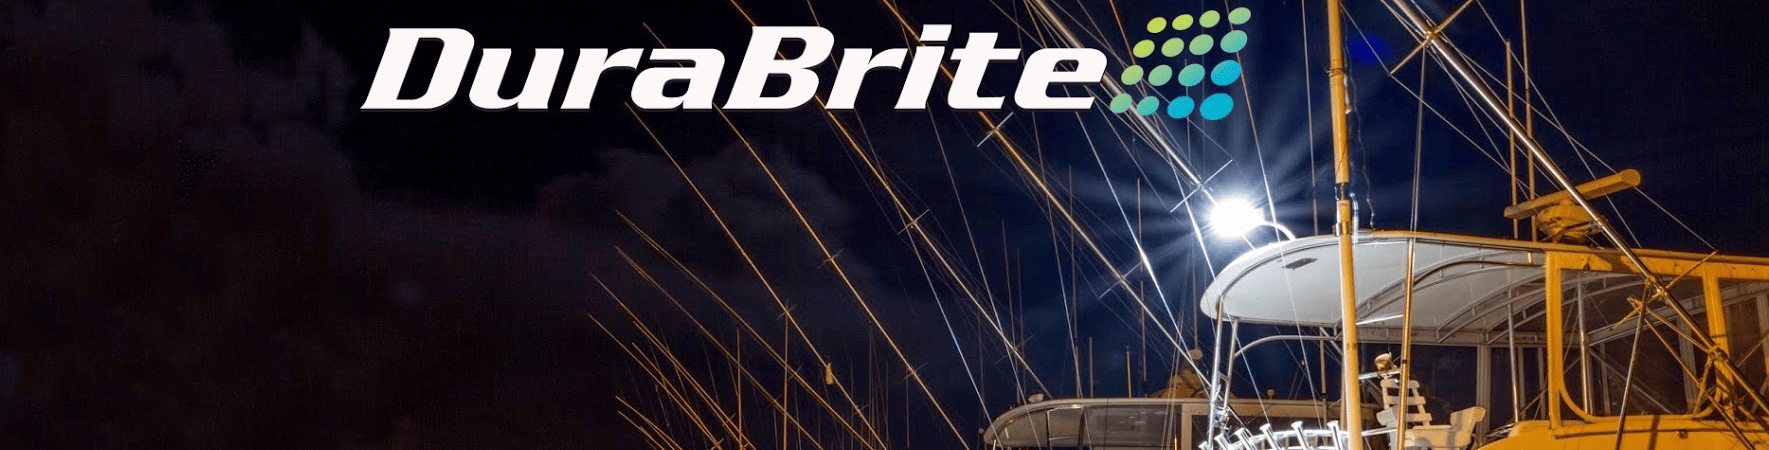 DuraBrite Lights | DuraBrite Marine Floodlights and Spotlights